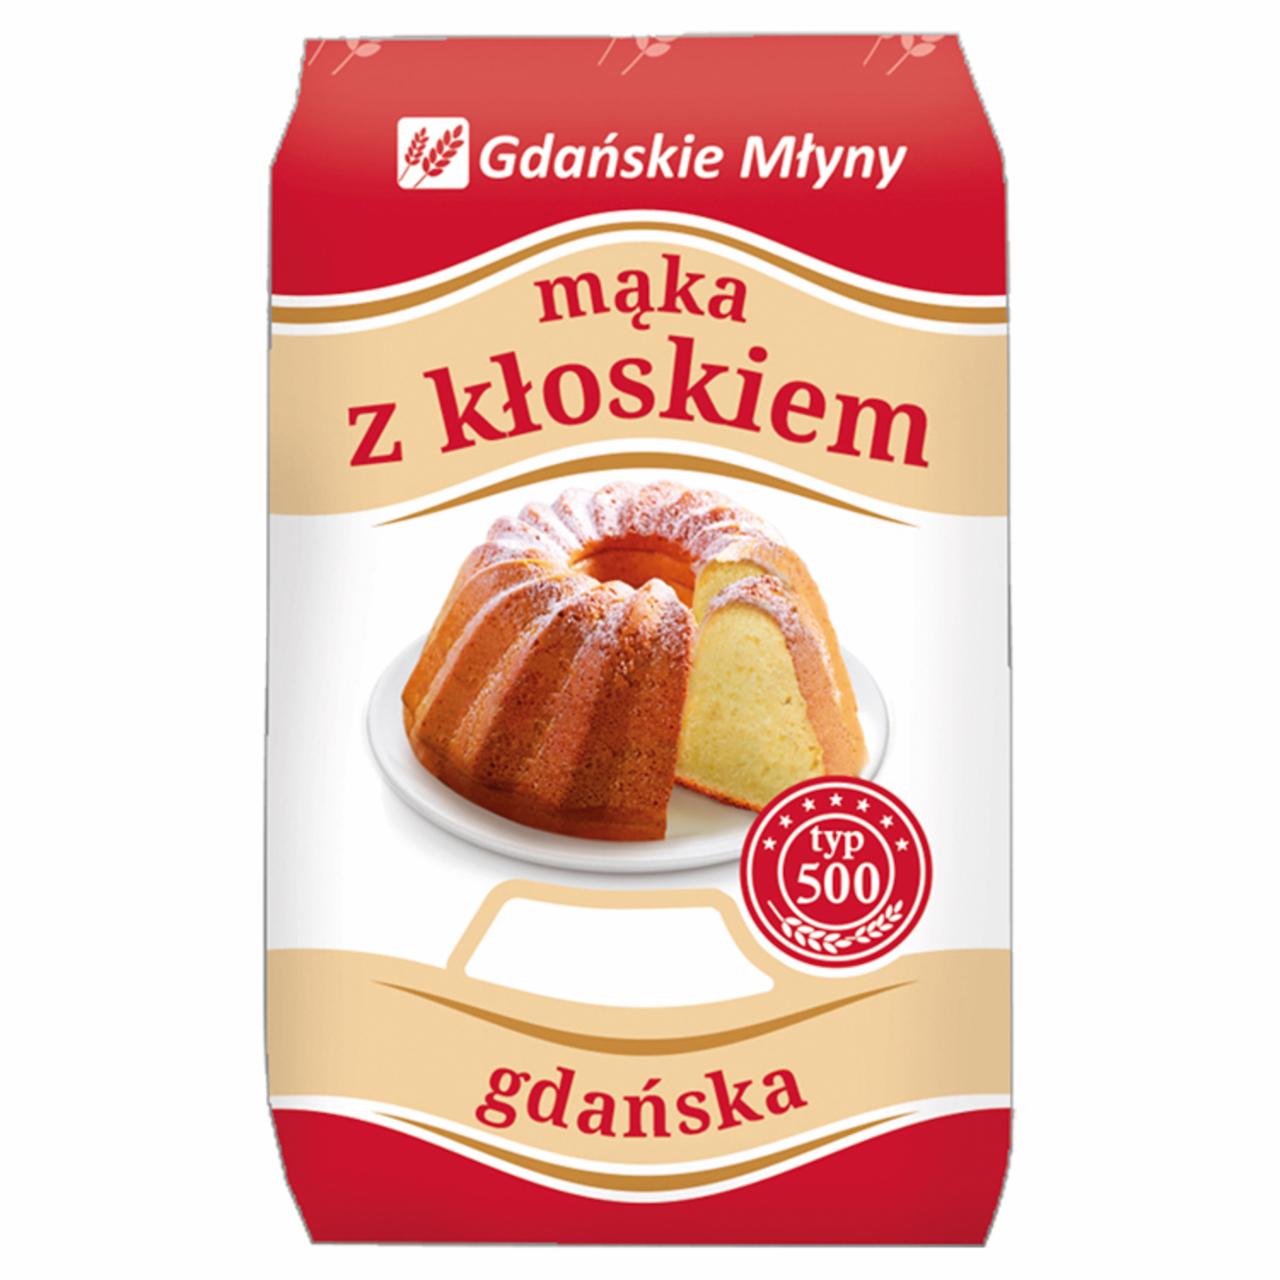 Zdjęcia - Gdańskie Młyny Mąka z kłoskiem Mąka pszenna gdańska typ 500 1 kg